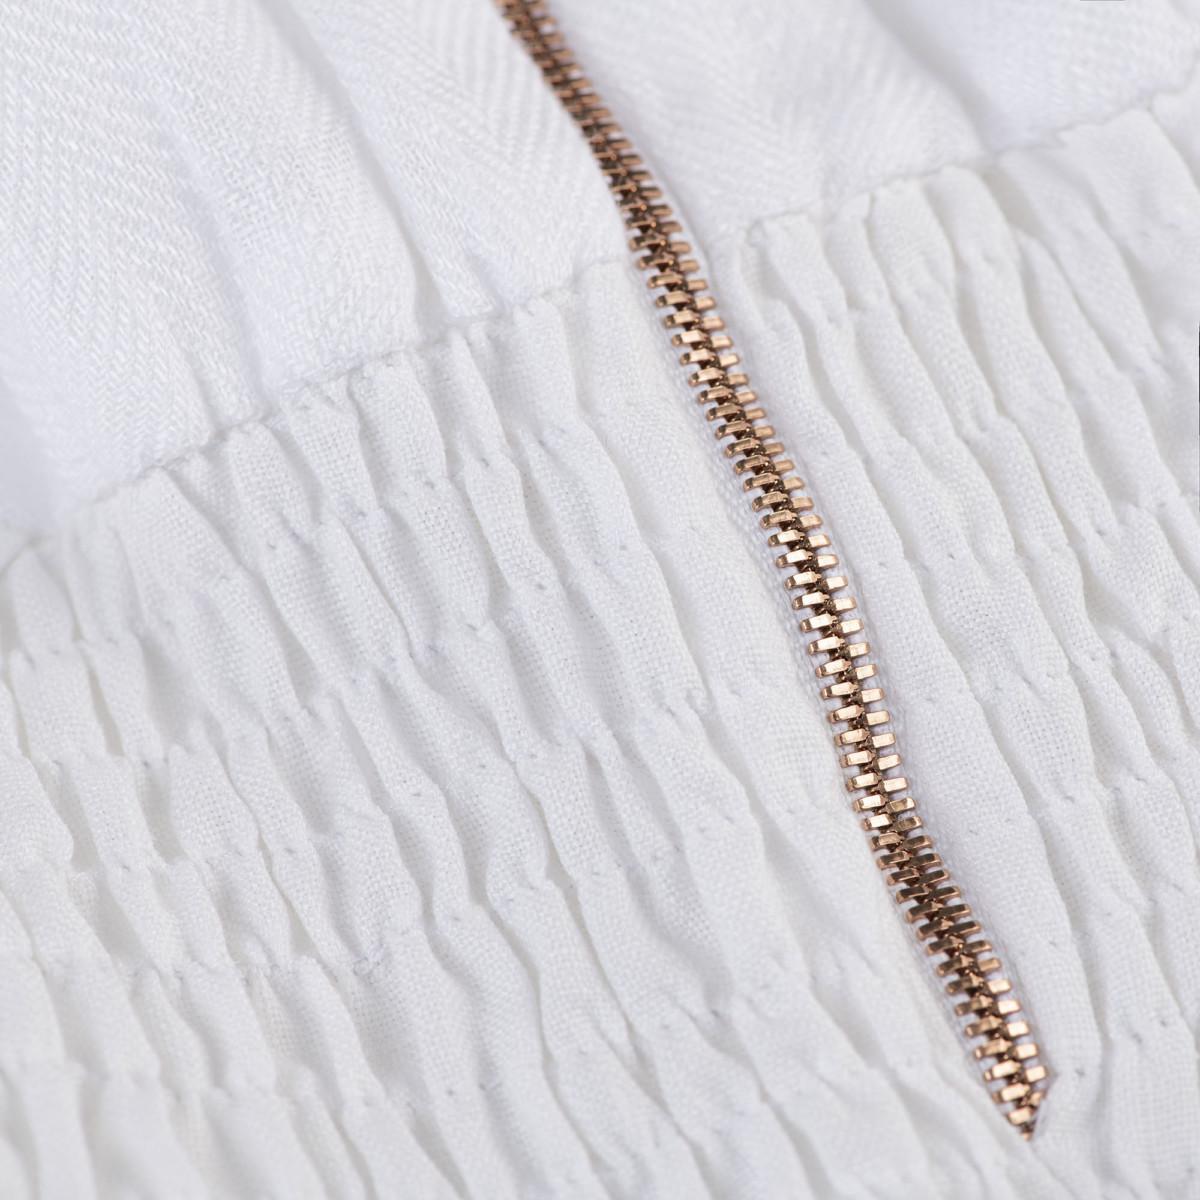 Tuta Zip  for woman  100% Capri white linen jumpsuit detail